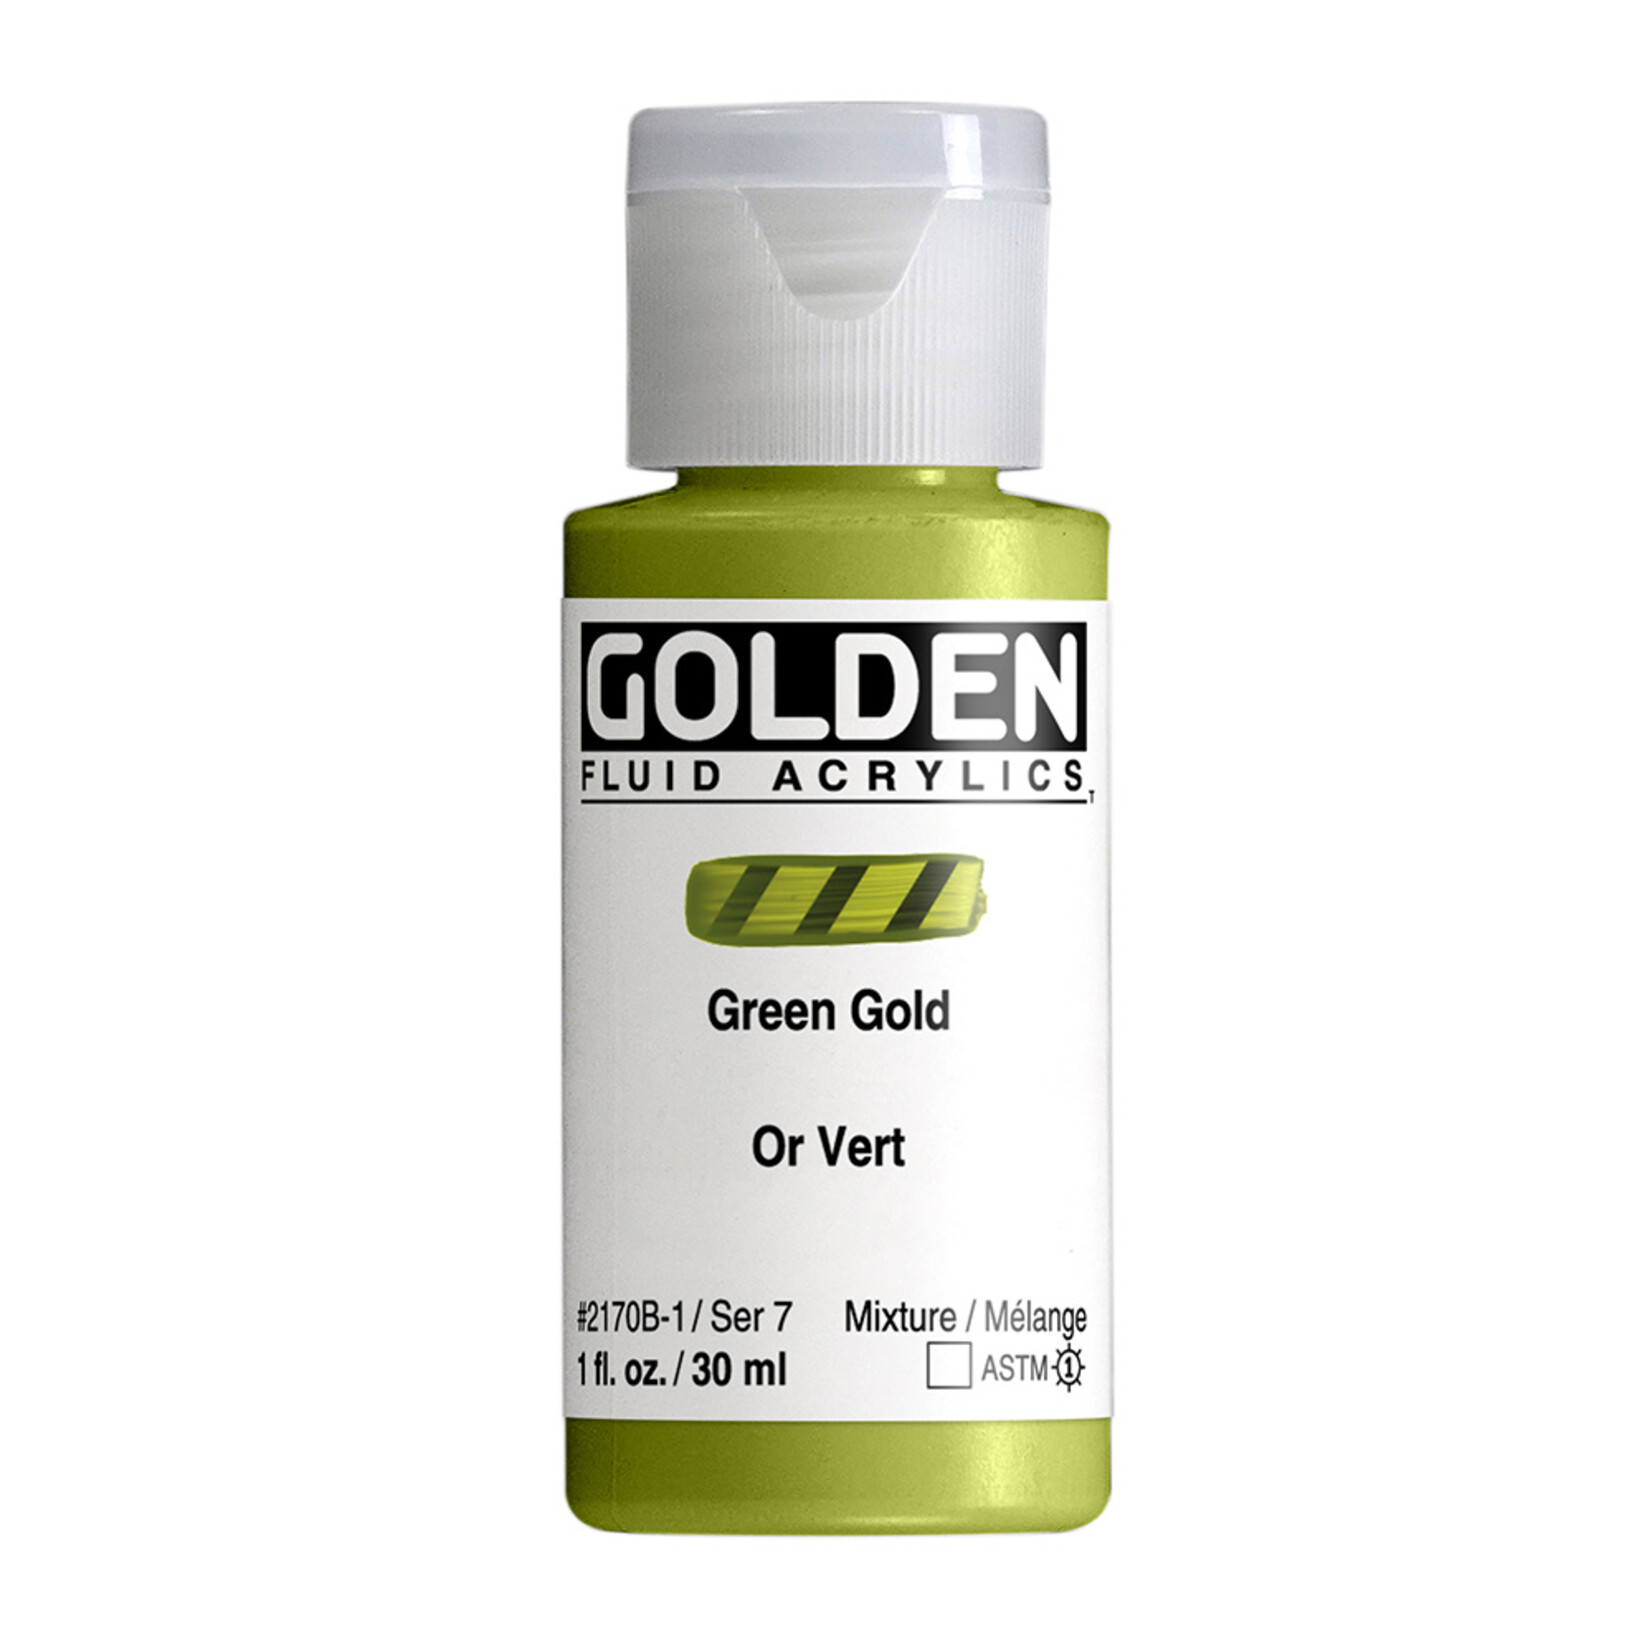 GOLDEN GOLDEN FLUID ACRYLIC 1OZ GREEN GOLD